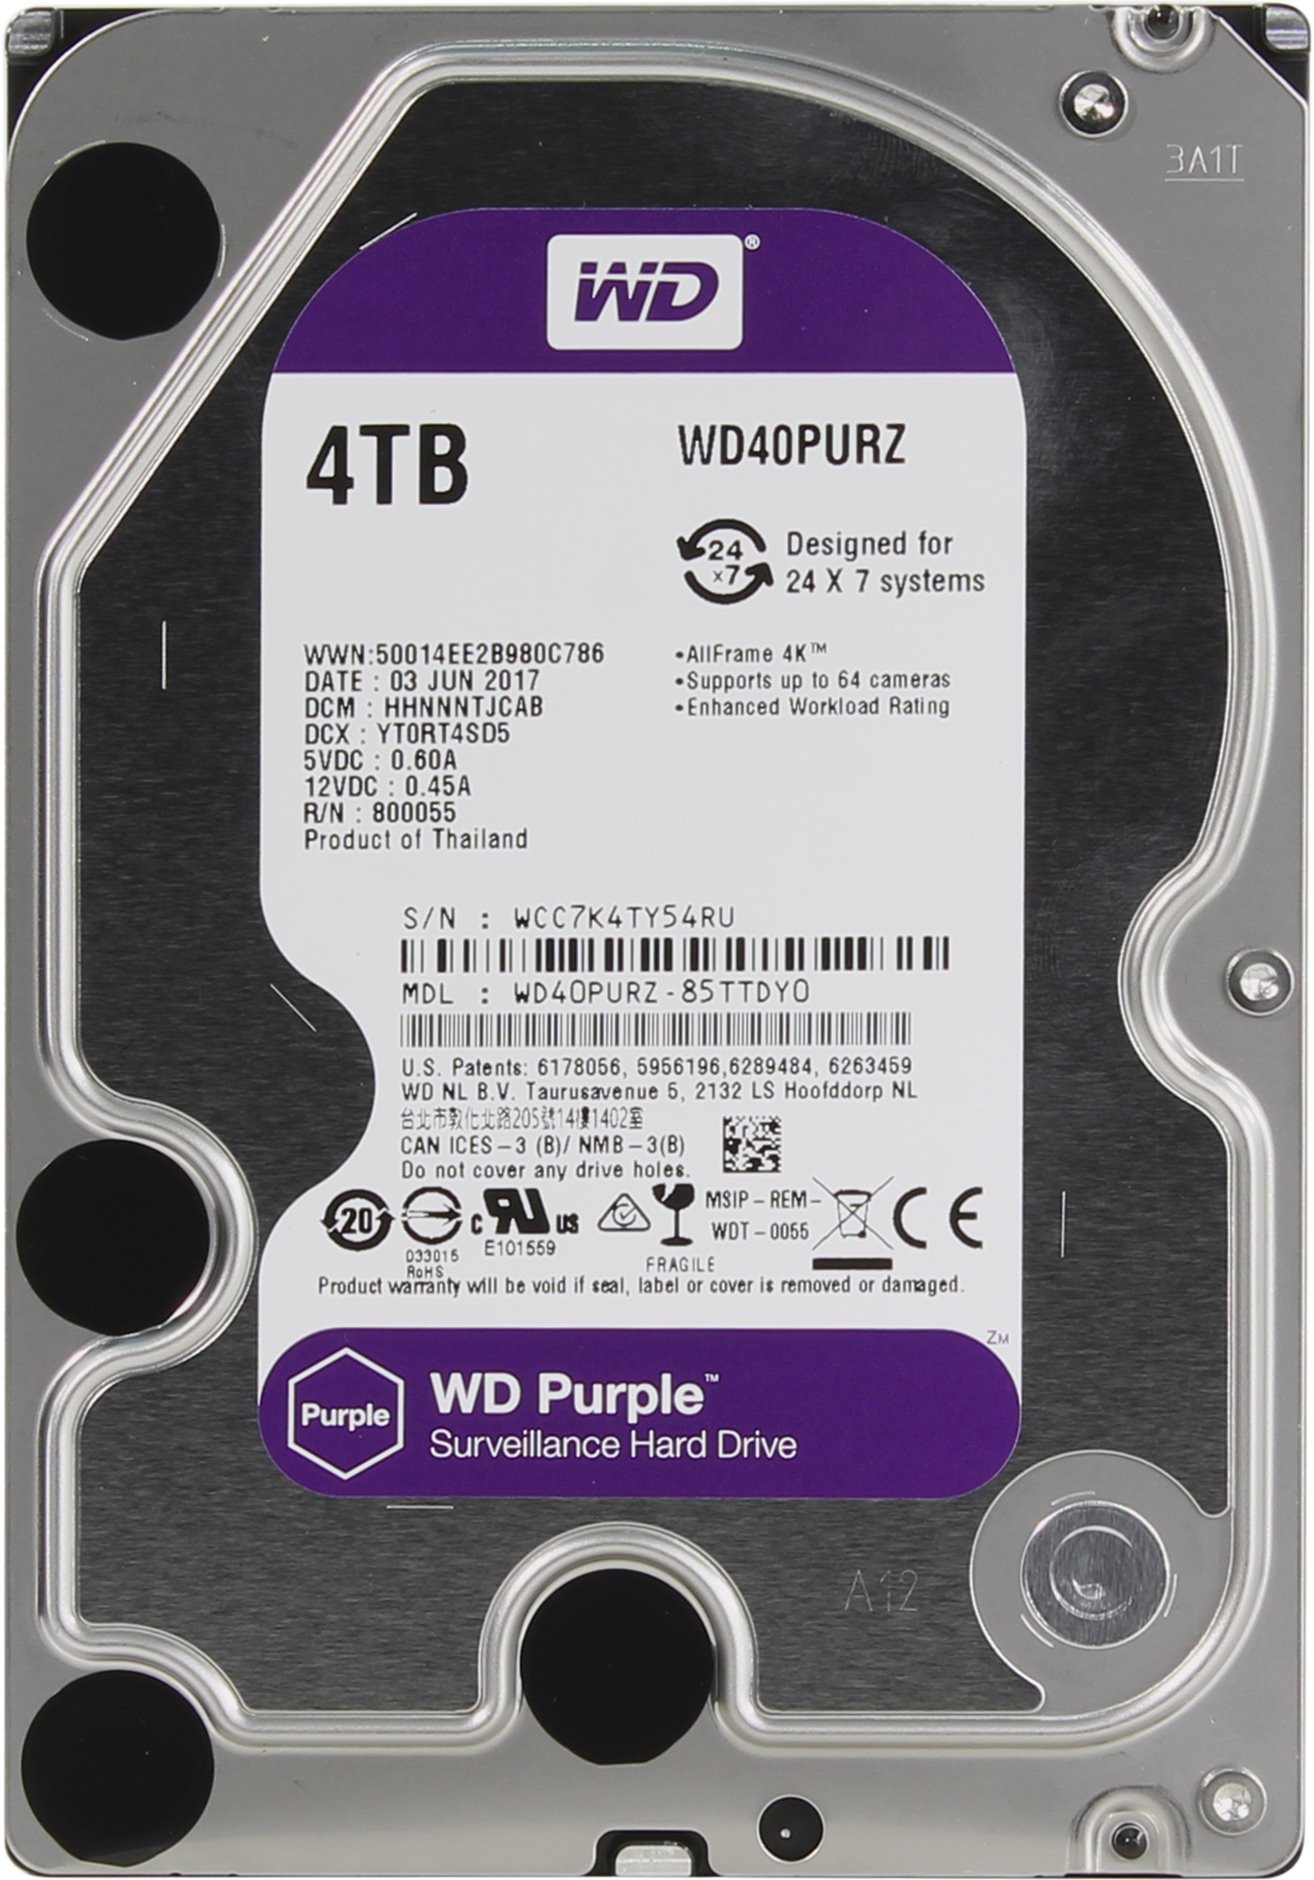   4Tb Western Digital WD40PURZ Purple (SATA-6b/s, 5400rpm, 64b)